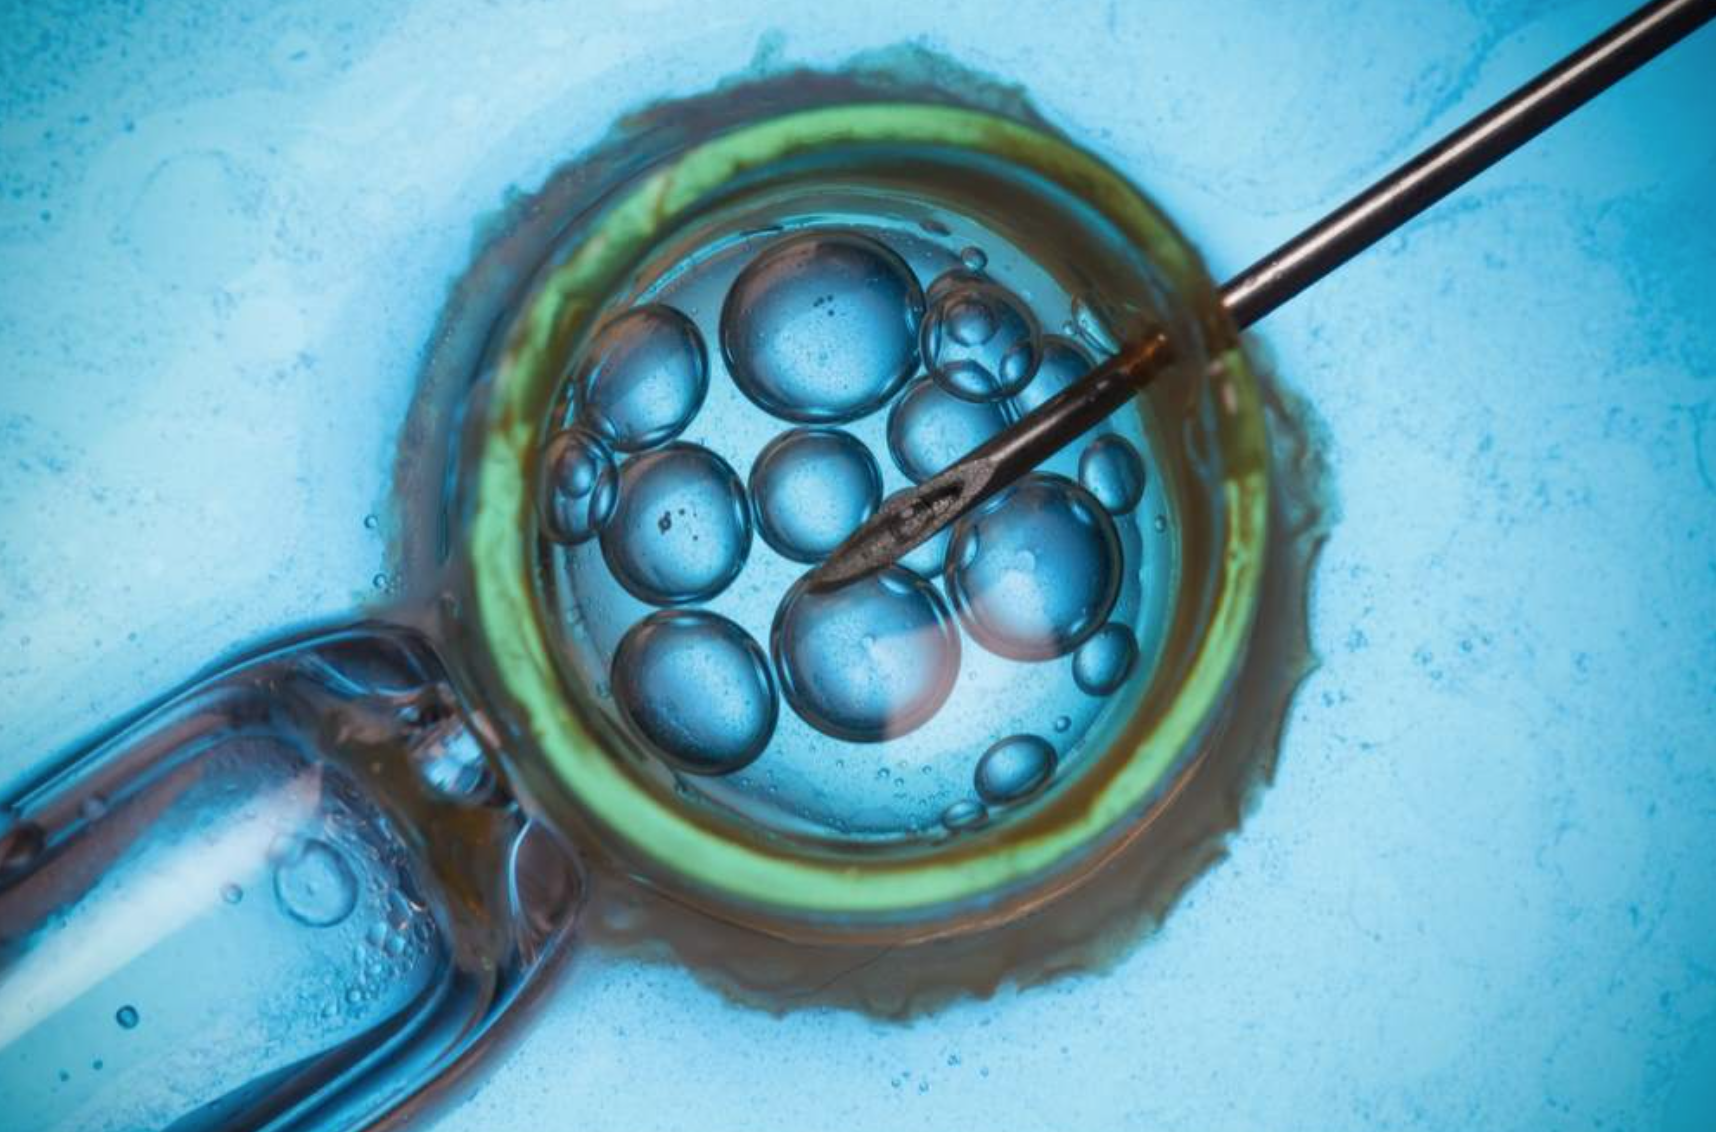 La decisione choc: sì all’impianto dell’embrione anche se l’ex è contrario – I DETTAGLI 1